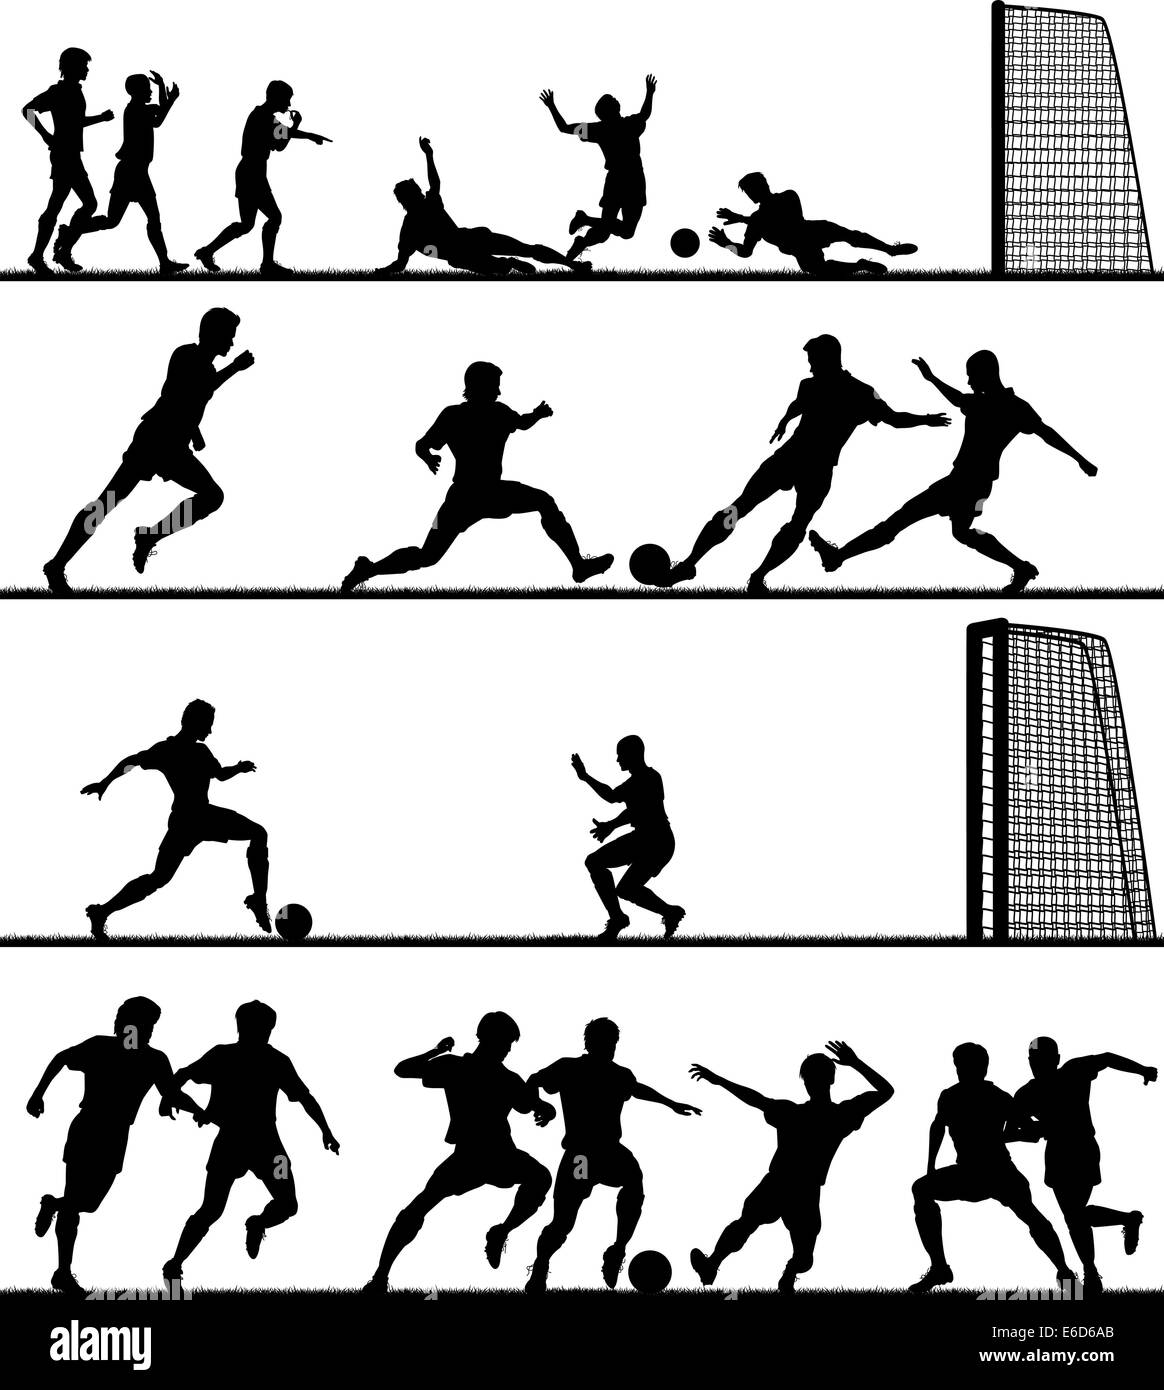 Ensemble de premier plan vectoriel éditable silhouettes d'hommes jouer au football avec tous les chiffres en tant qu'objets séparés Illustration de Vecteur